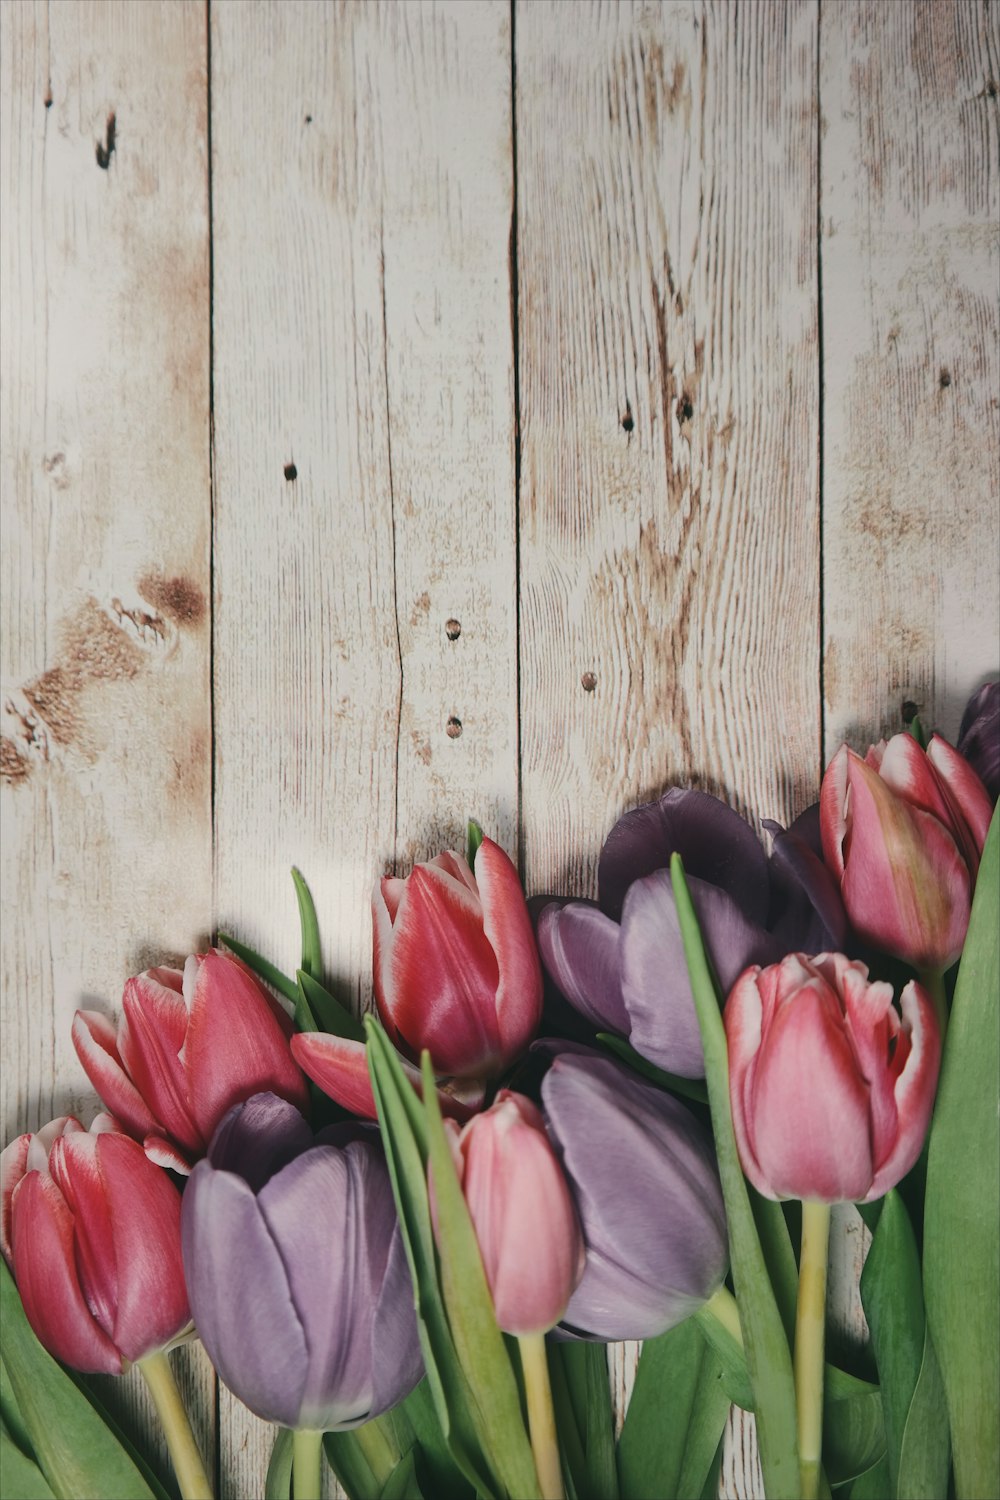 Makroaufnahme von rosa Tulpen auf einem Holzdeck.